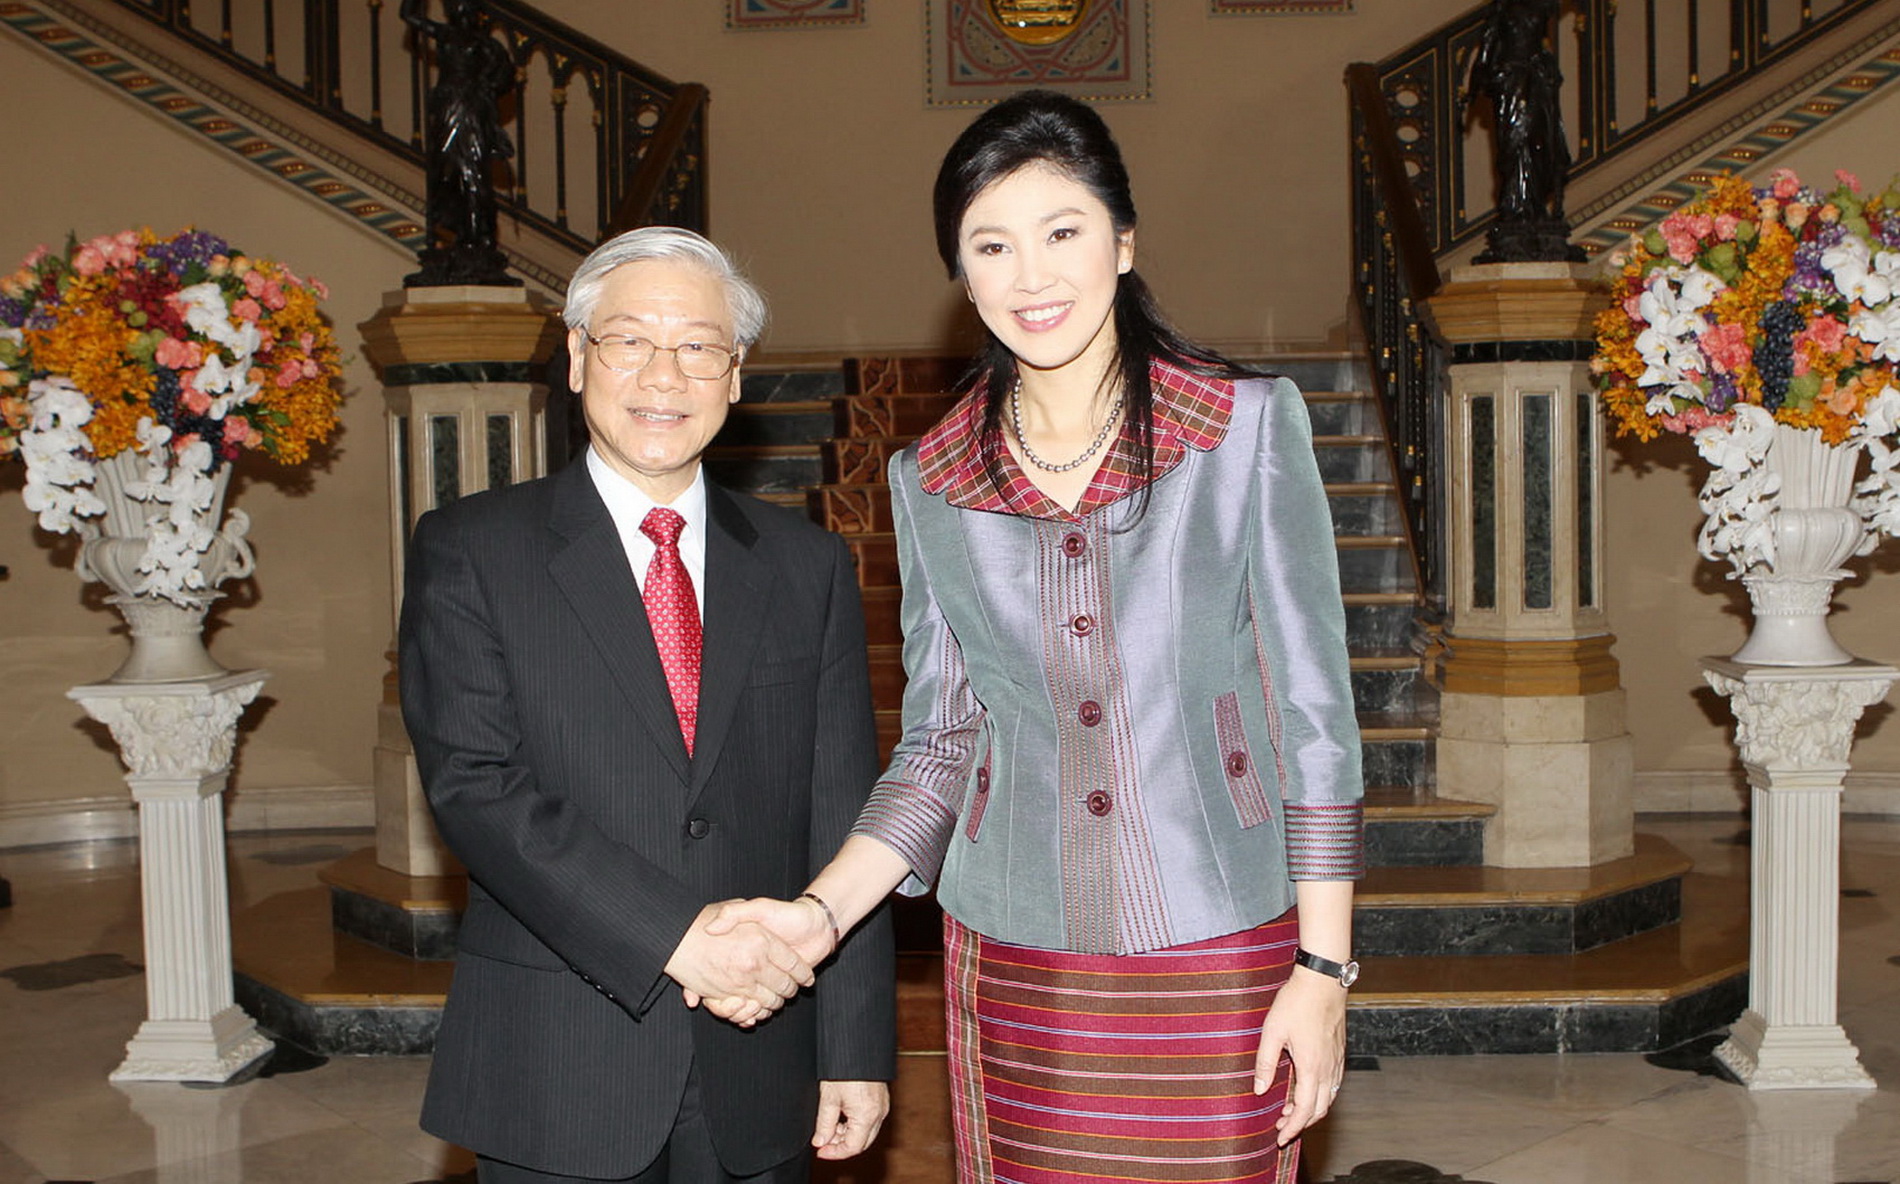 Tổng Bí thư Nguyễn Phú Trọng trong chuyến thăm Thái Lan vào tháng 6/2013, chụp cùng Thủ tướng Thái Lan Yingluck Shinawatra tại lễ đón. (Ảnh: Trí Dũng-TTXVN)